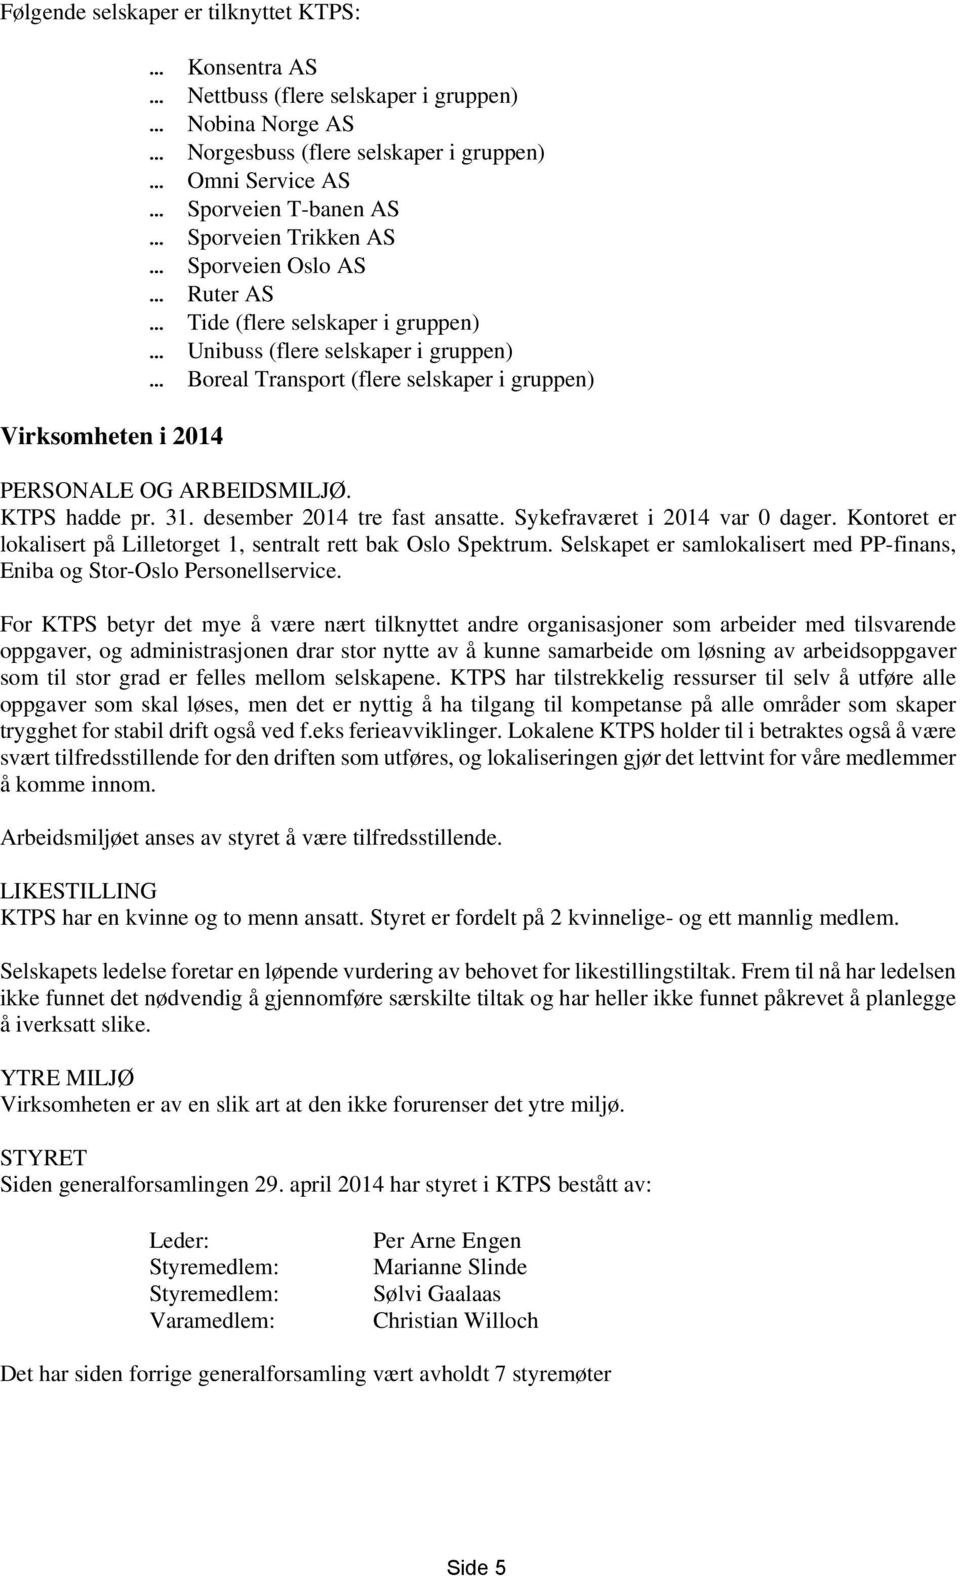 KTPS hadde pr. 31. desember 2014 tre fast ansatte. Sykefraværet i 2014 var 0 dager. Kontoret er lokalisert på Lilletorget 1, sentralt rett bak Oslo Spektrum.